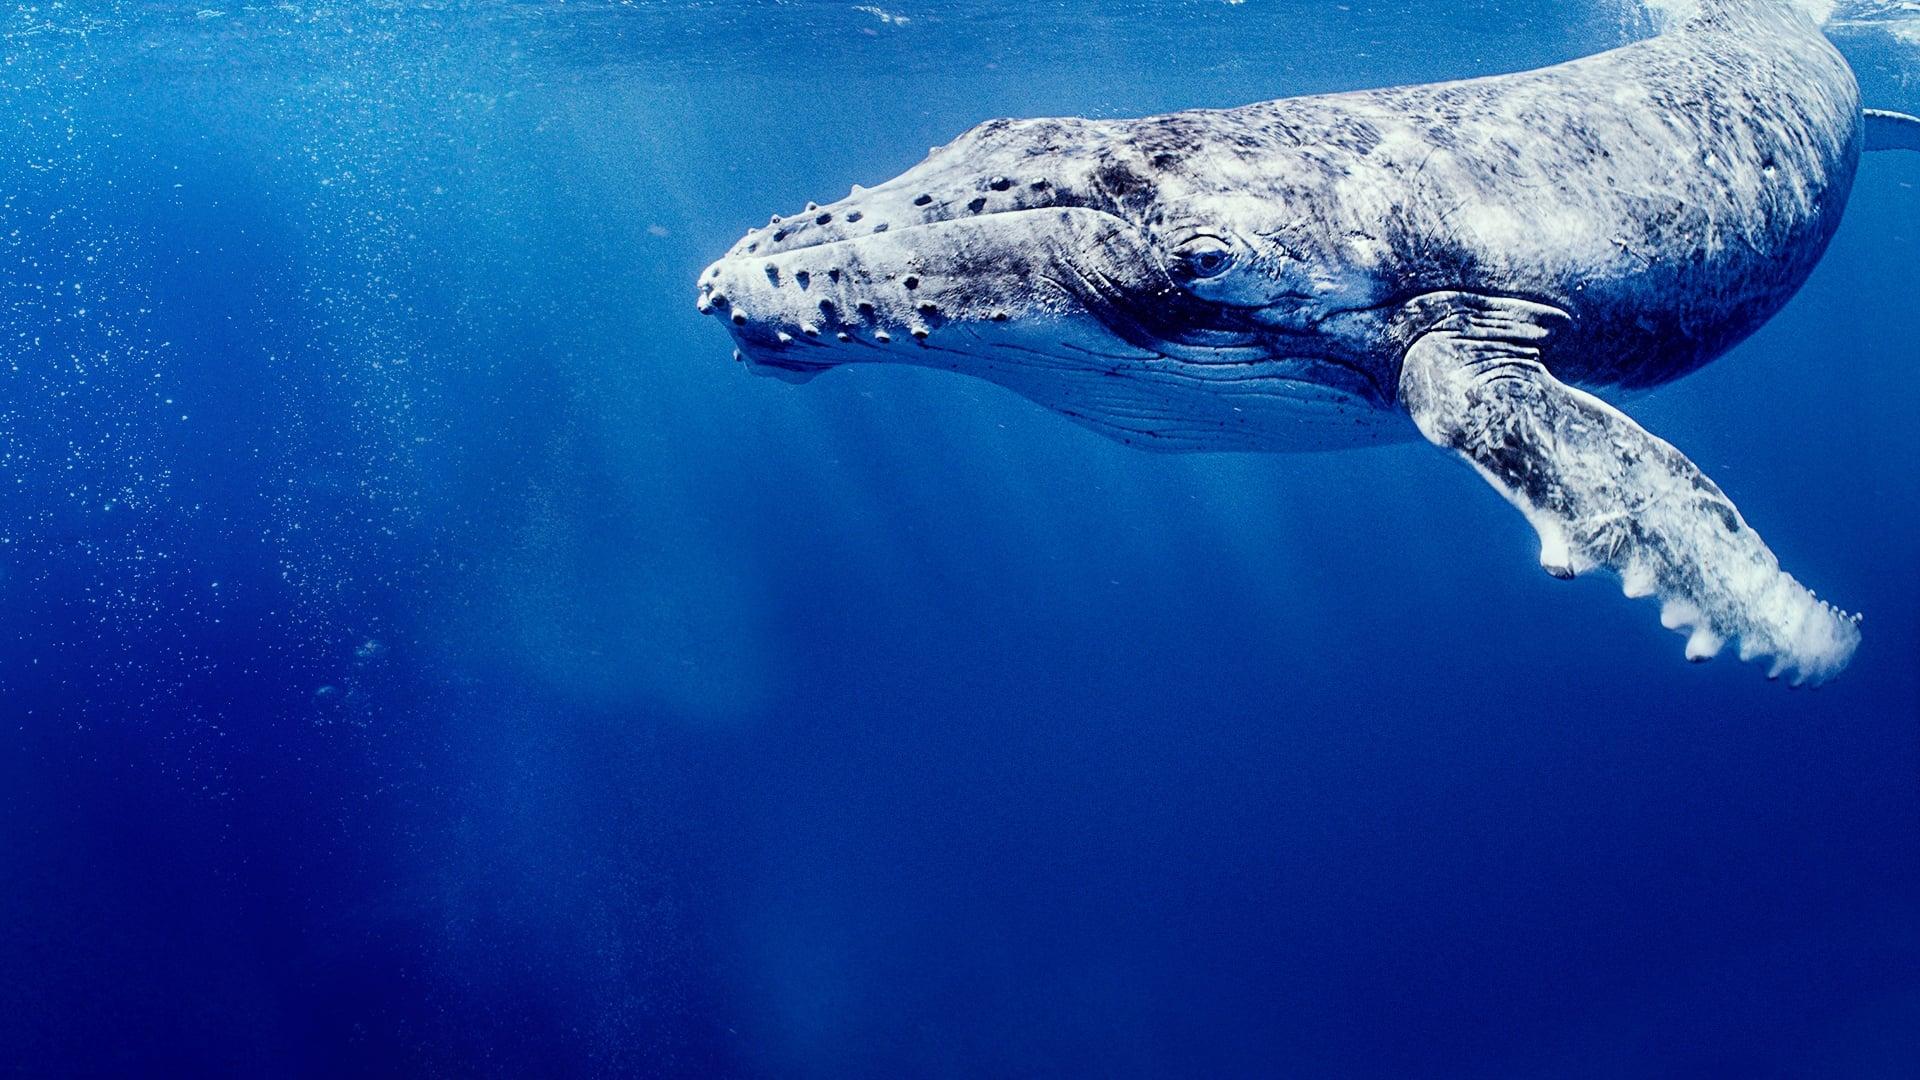 Les Secrets des baleines